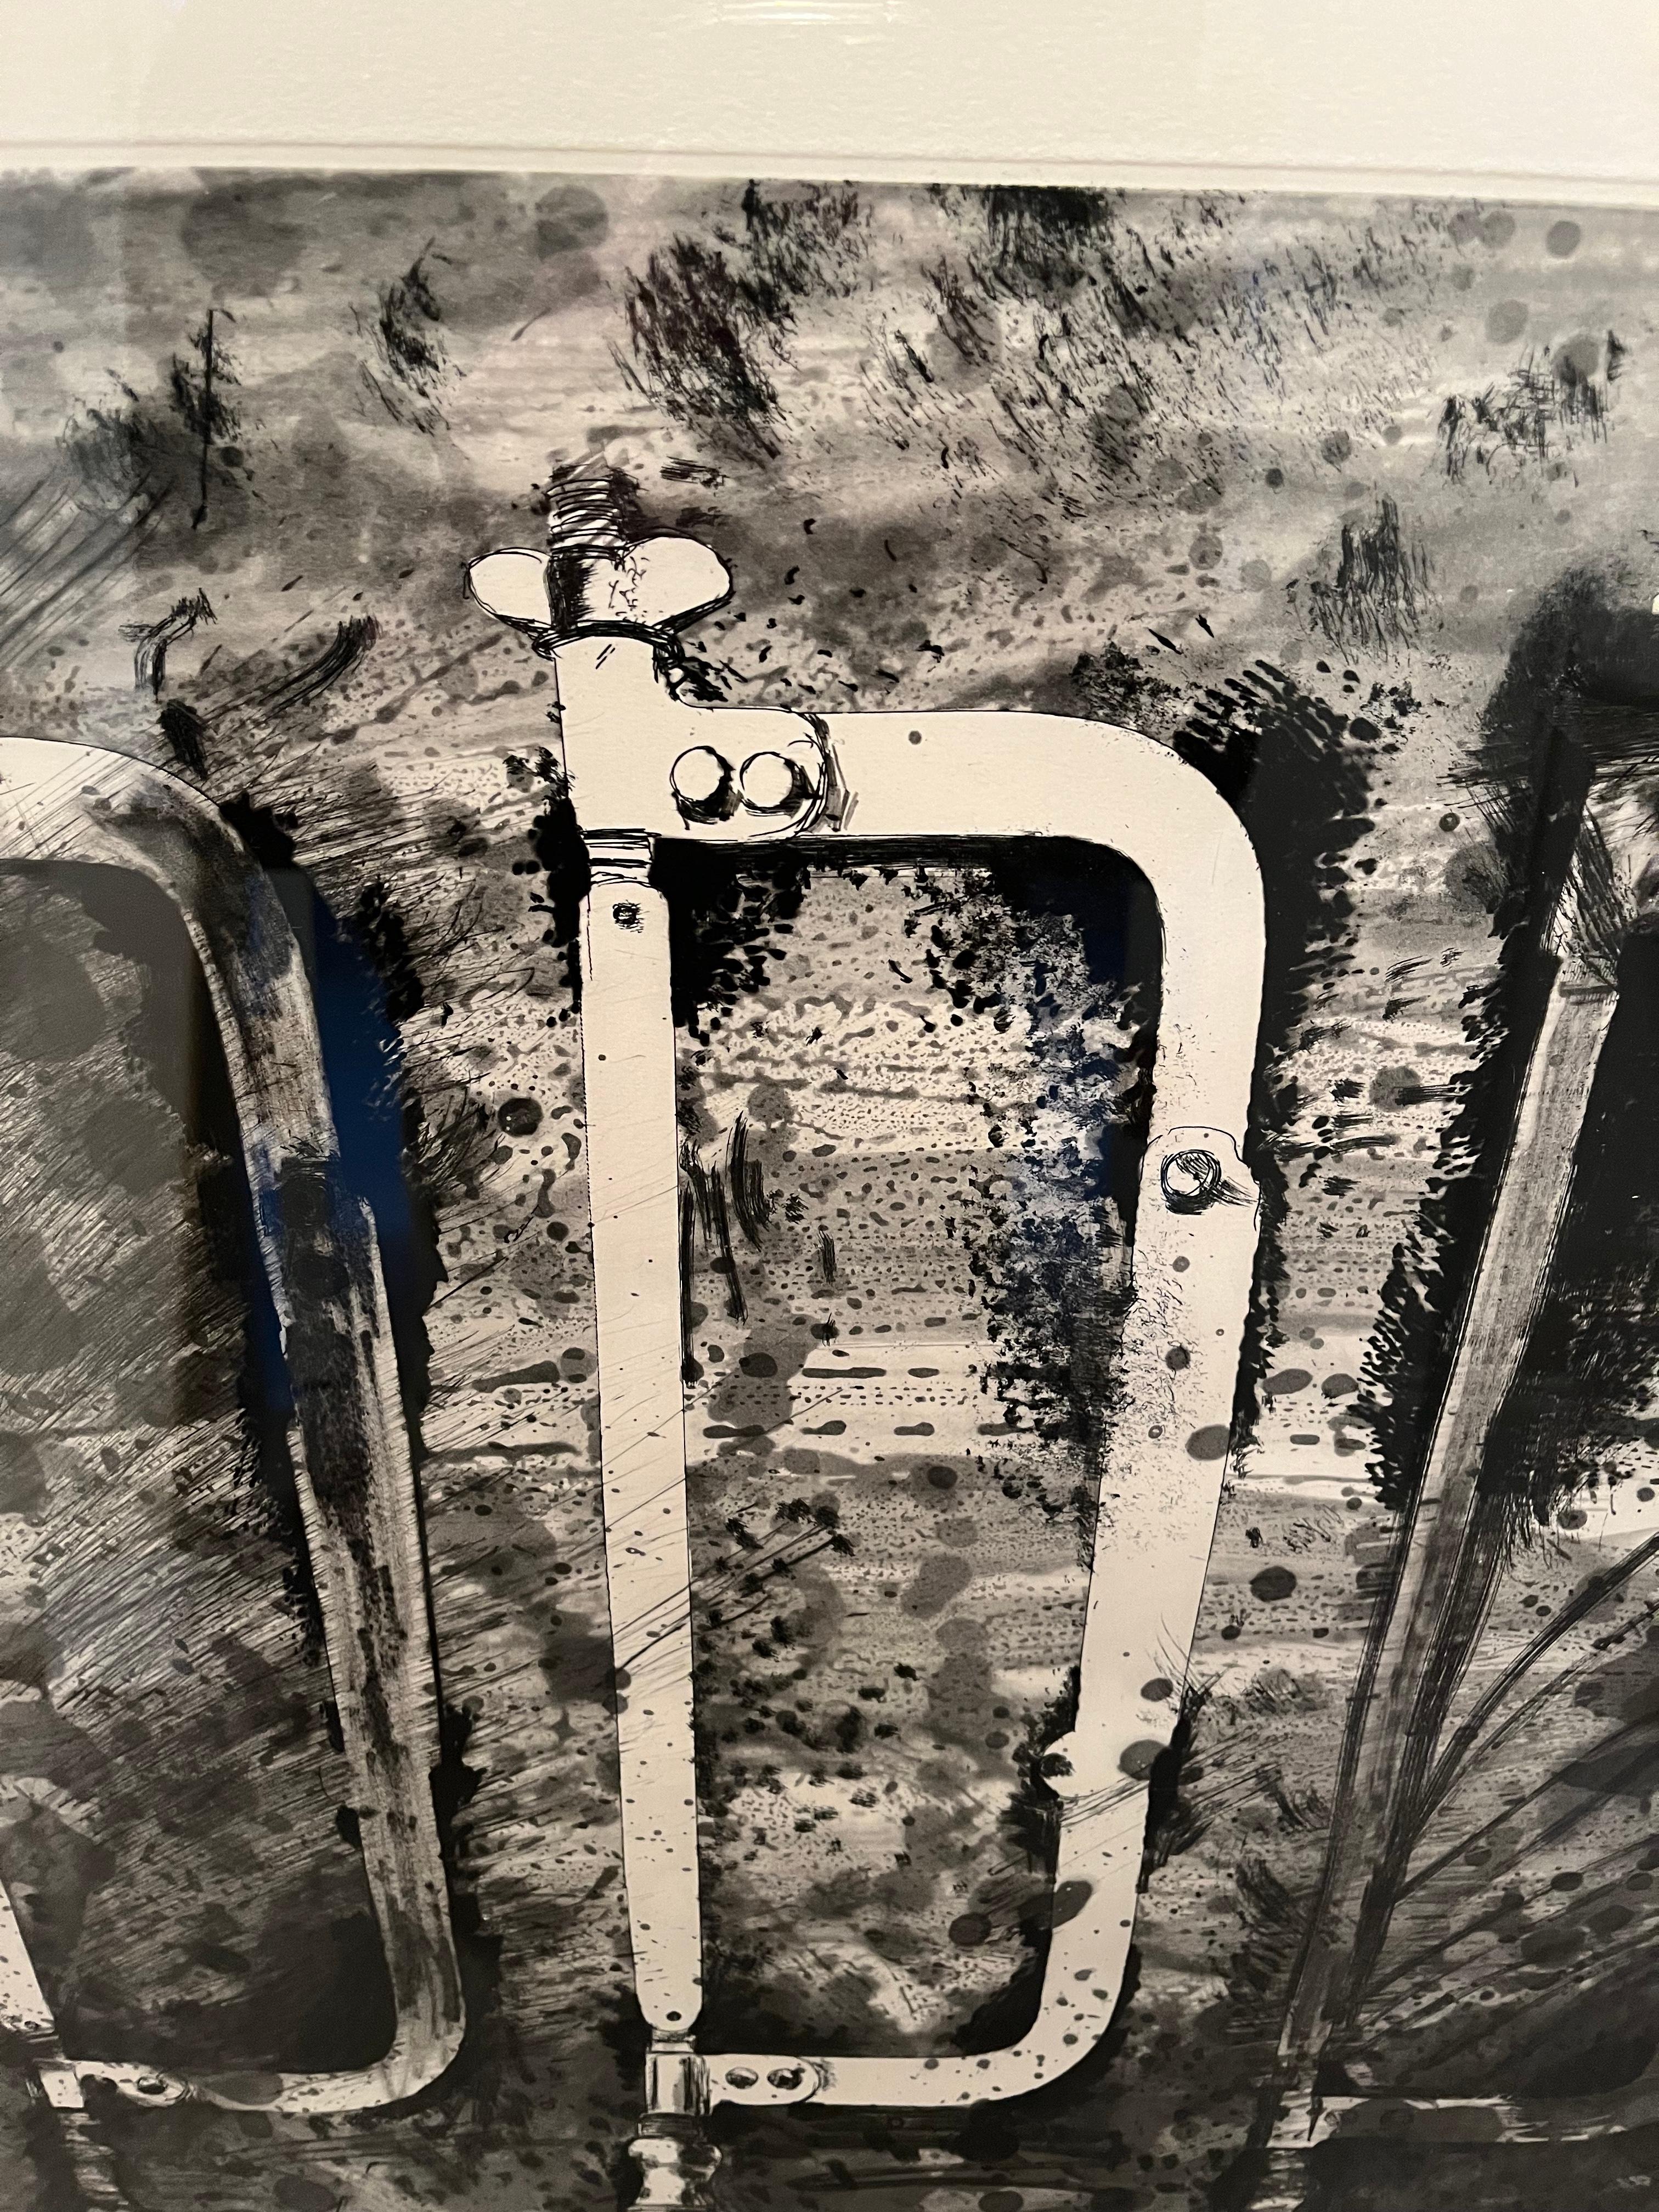  

Jim Dine (né en 1935)

Les nouveaux outils français 2 - Trois scies de la rue Cler


Gravure, aquatinte et outils électriques en couleurs sur papier Arches, 1984
36 x 24-7/8 pouces (91,4 x 63,2 cm) (feuille)
Ed. 33/50 (il y a eu aussi 15 épreuves